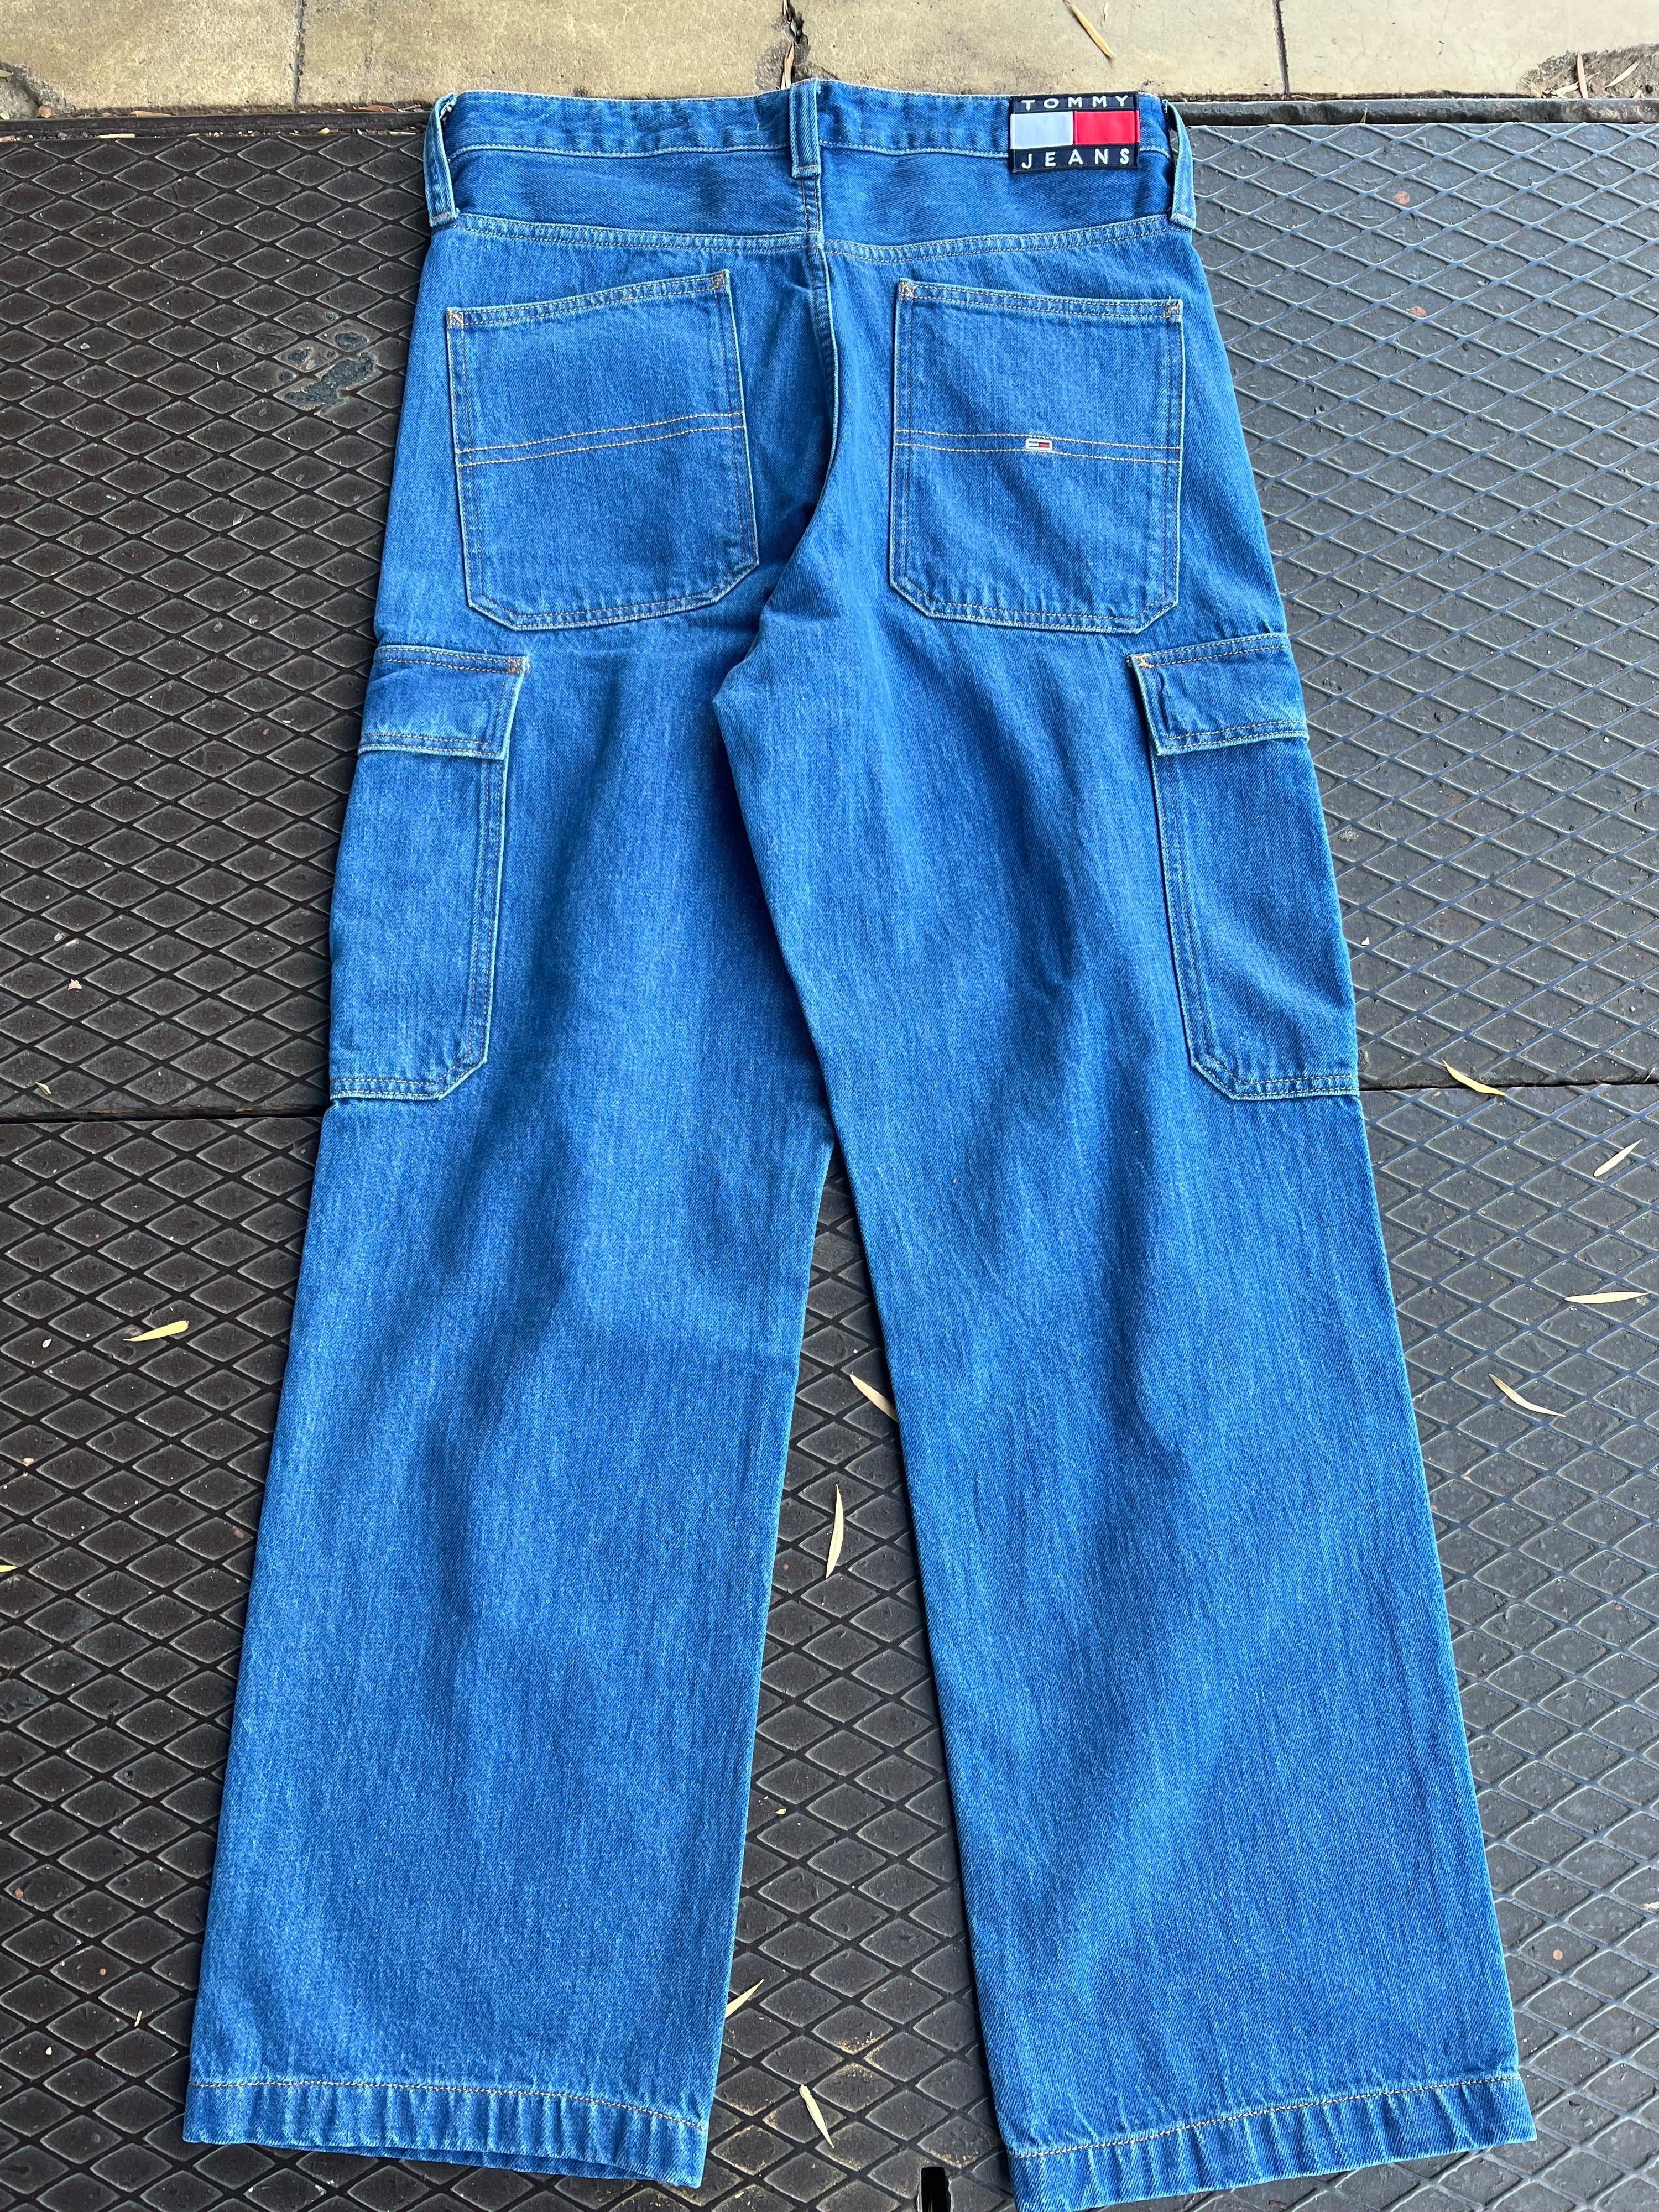 32 - Tommy Jeans LB Denim Jeans 32x32